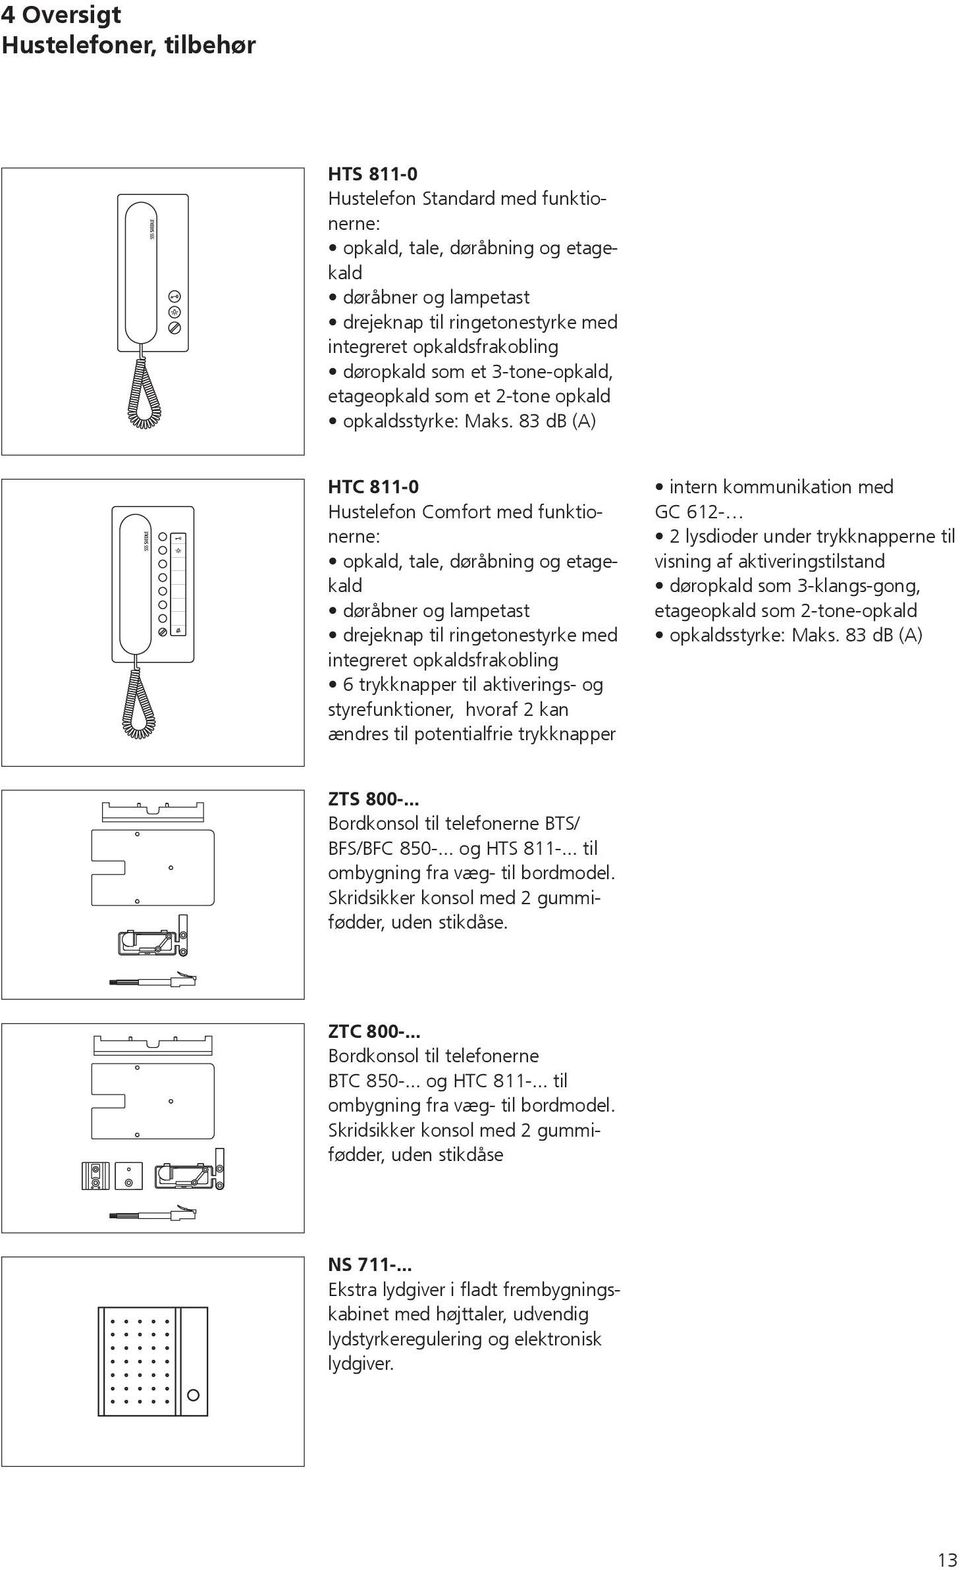 83 db (A) HTC 811-0 Hustelefon Comfort med funktionerne: opkald, tale, døråbning og etagekald døråbner og lampetast drejeknap til ringetonestyrke med integreret opkaldsfrakobling 6 trykknapper til